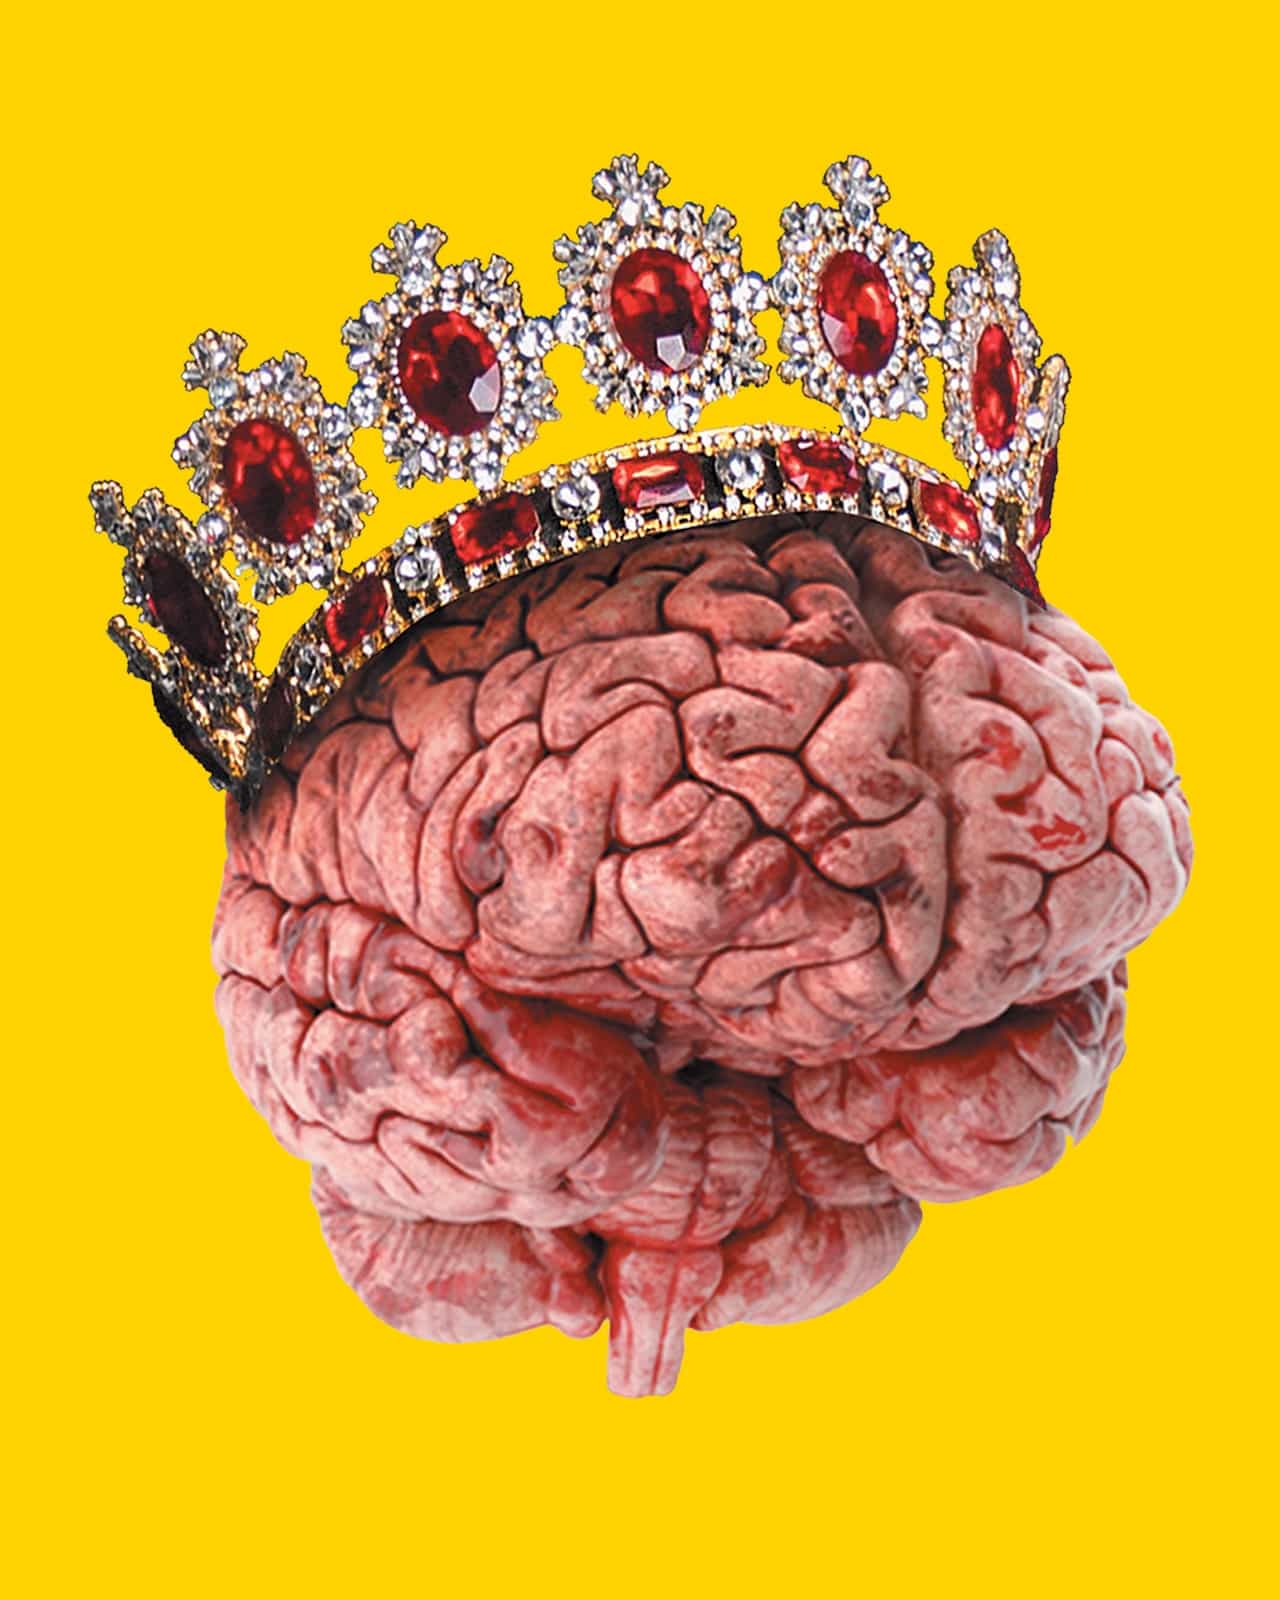 Economía y religión en nuestro cerebro  | con nombre de podcast 03x30 | luisbermejo. Com